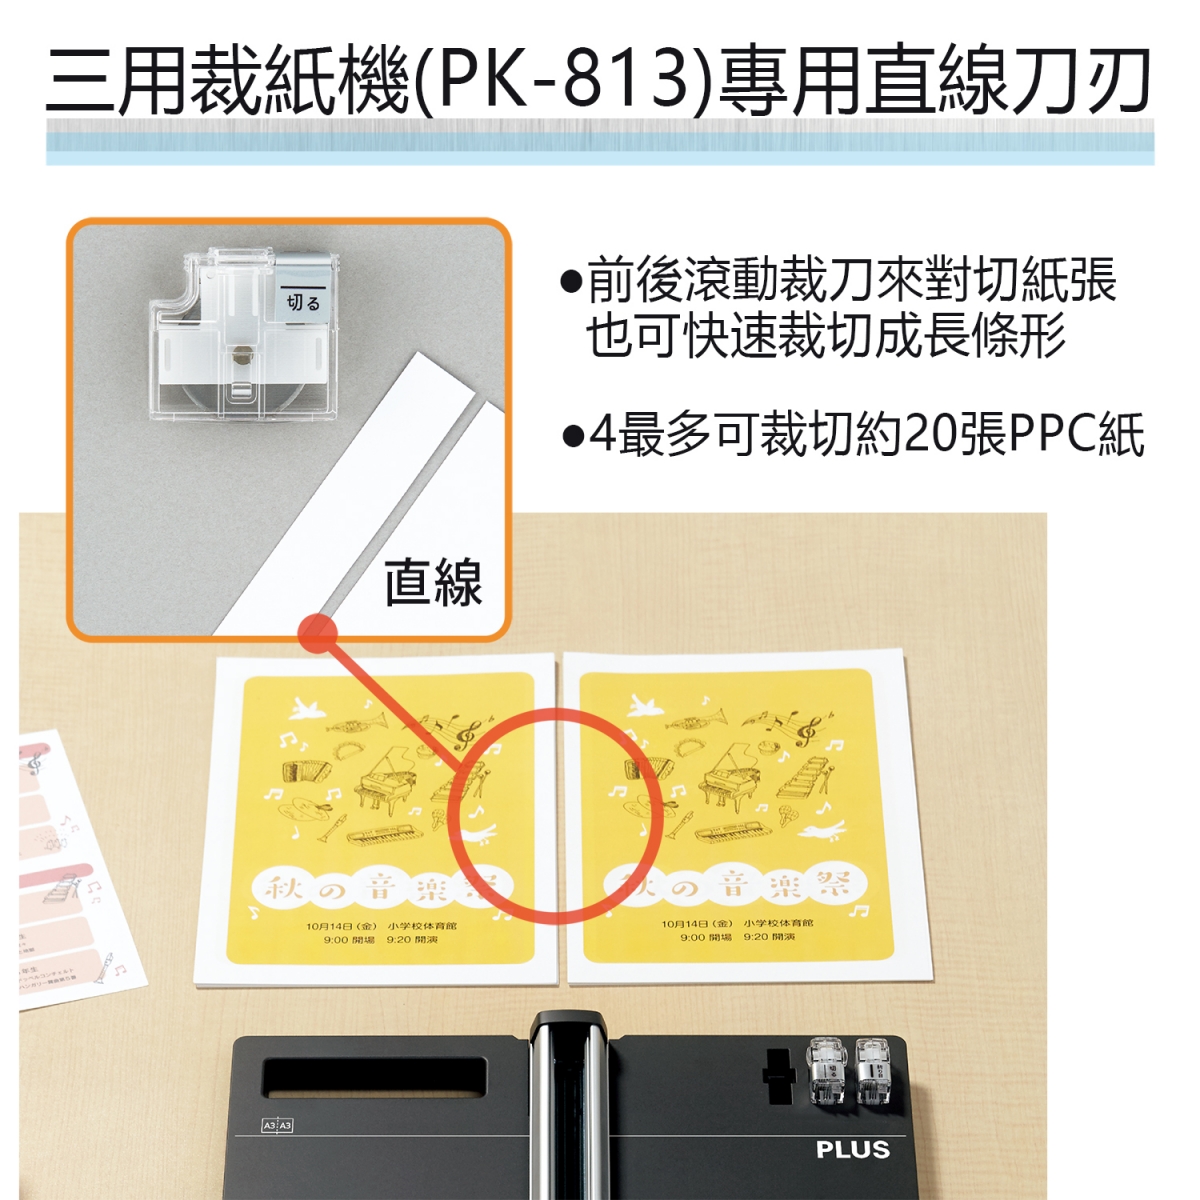 PLUS 26-475 PK-813三用裁紙機專用虛線替刃